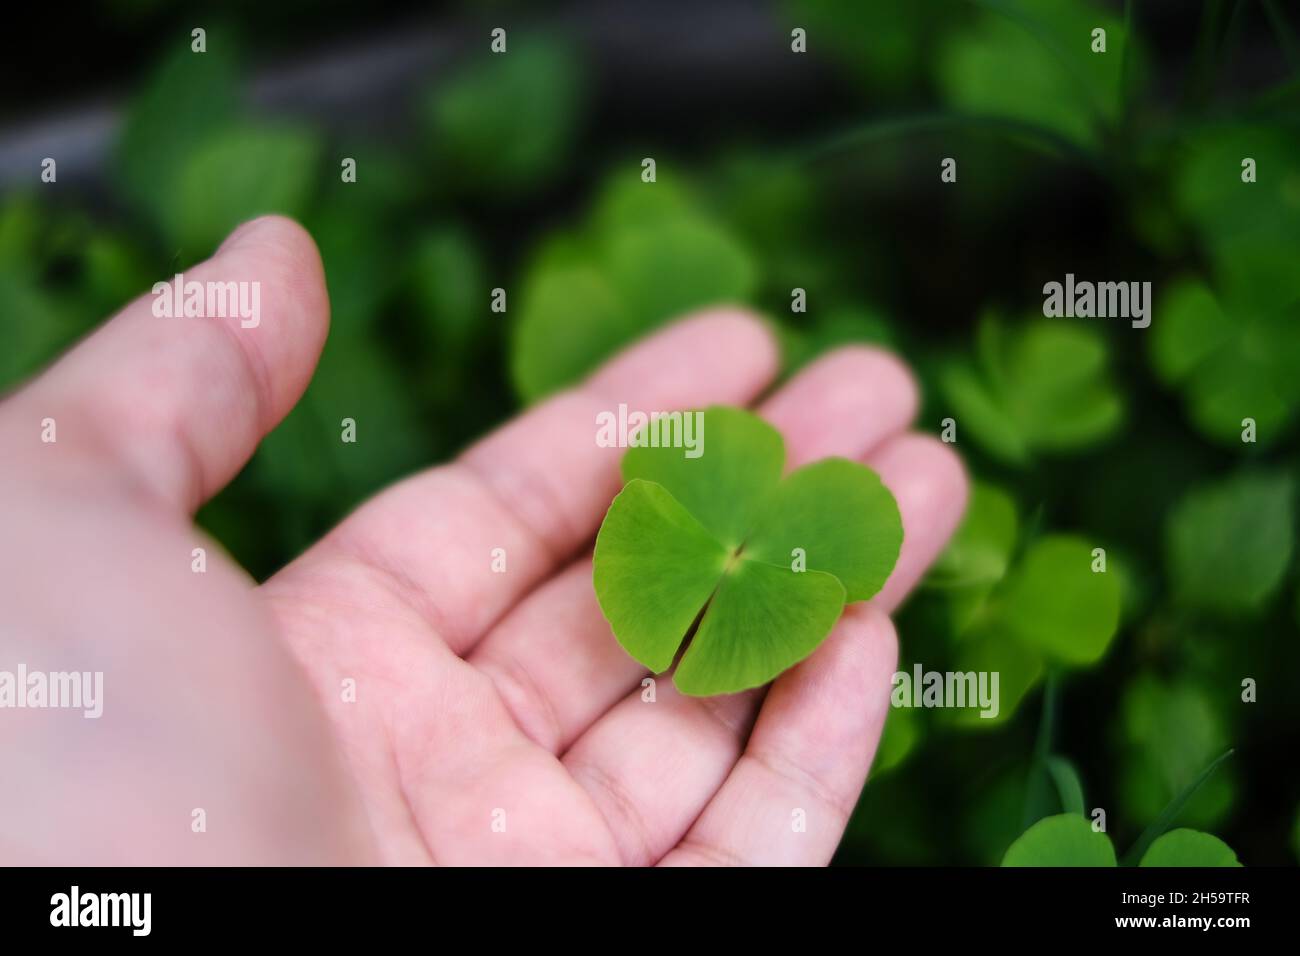 Une main ramassant un trèfle vert de 4 feuilles d'un jardin, l'enregistrer comme un charme de bonne chance.Les quatre feuilles représentent l'espoir, la foi, l'amour et la chance. Banque D'Images